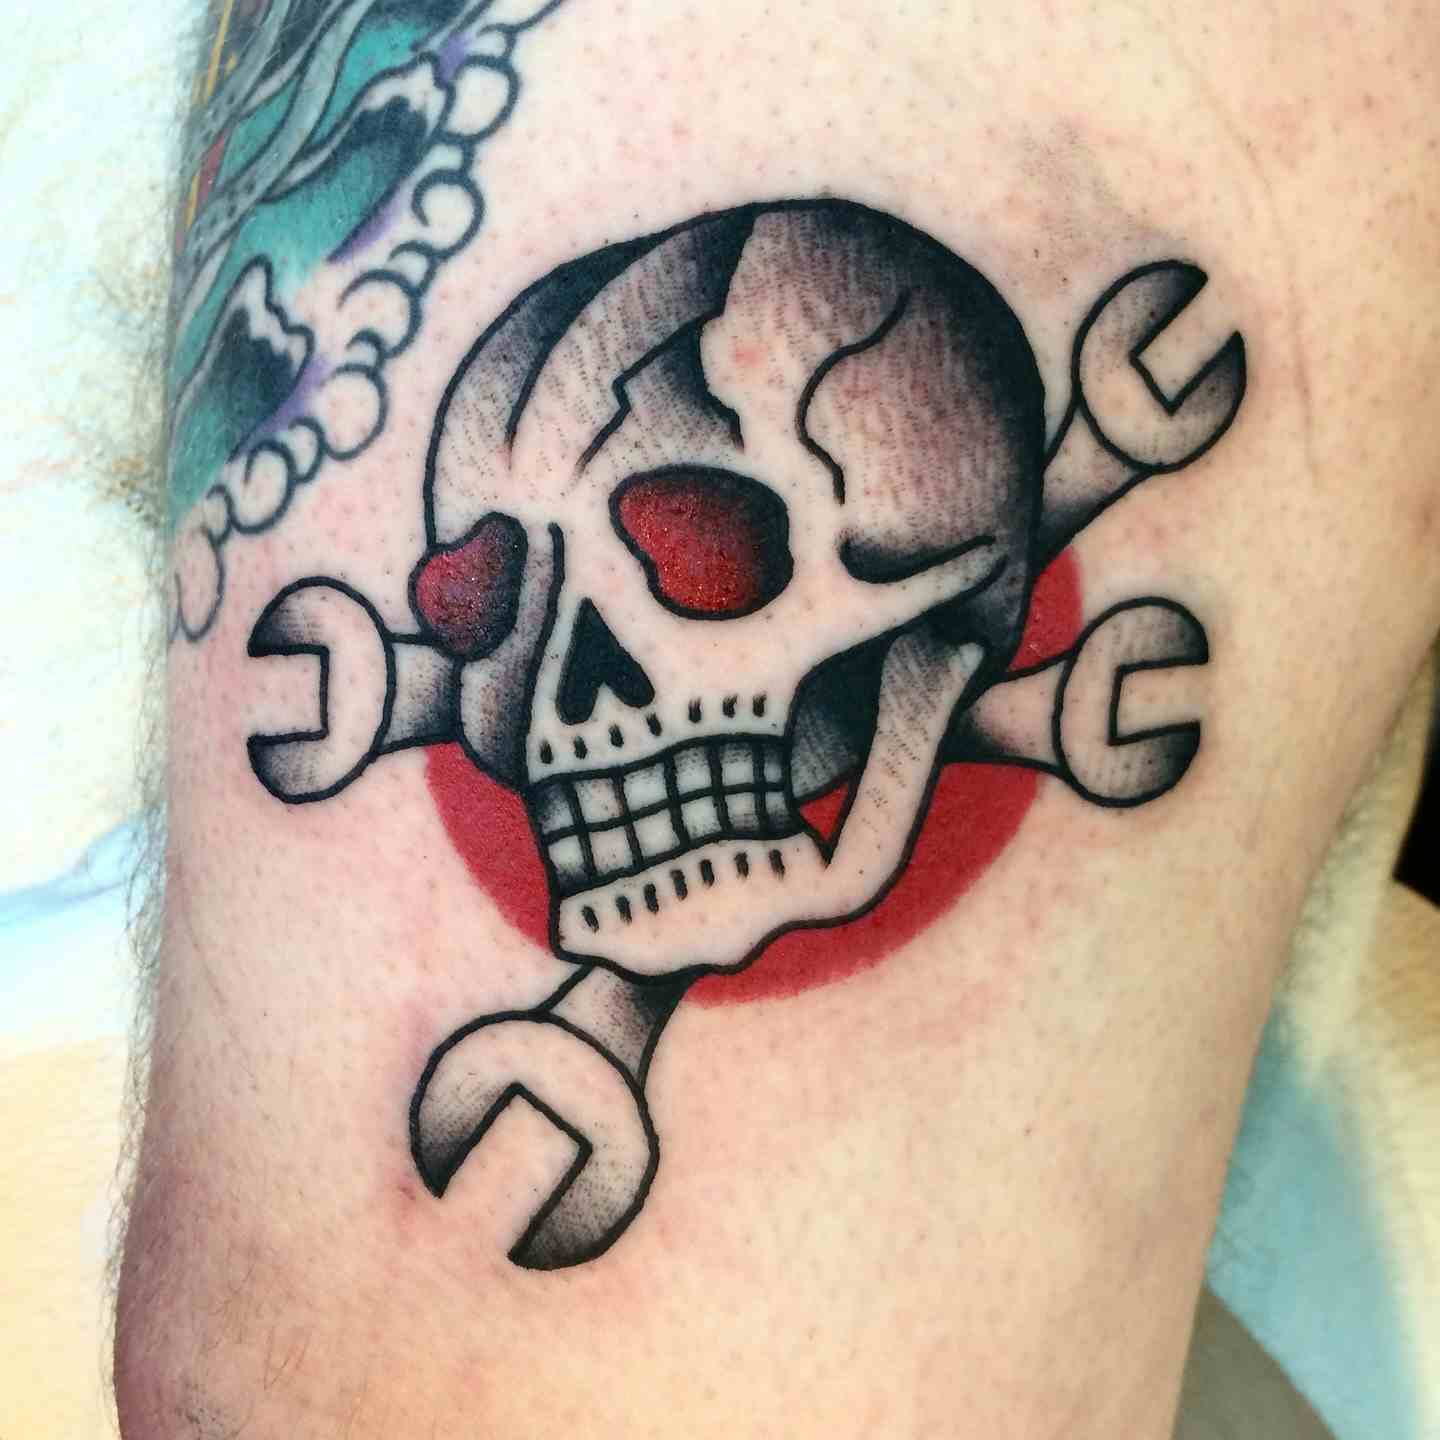 Mechanic skull tattoo